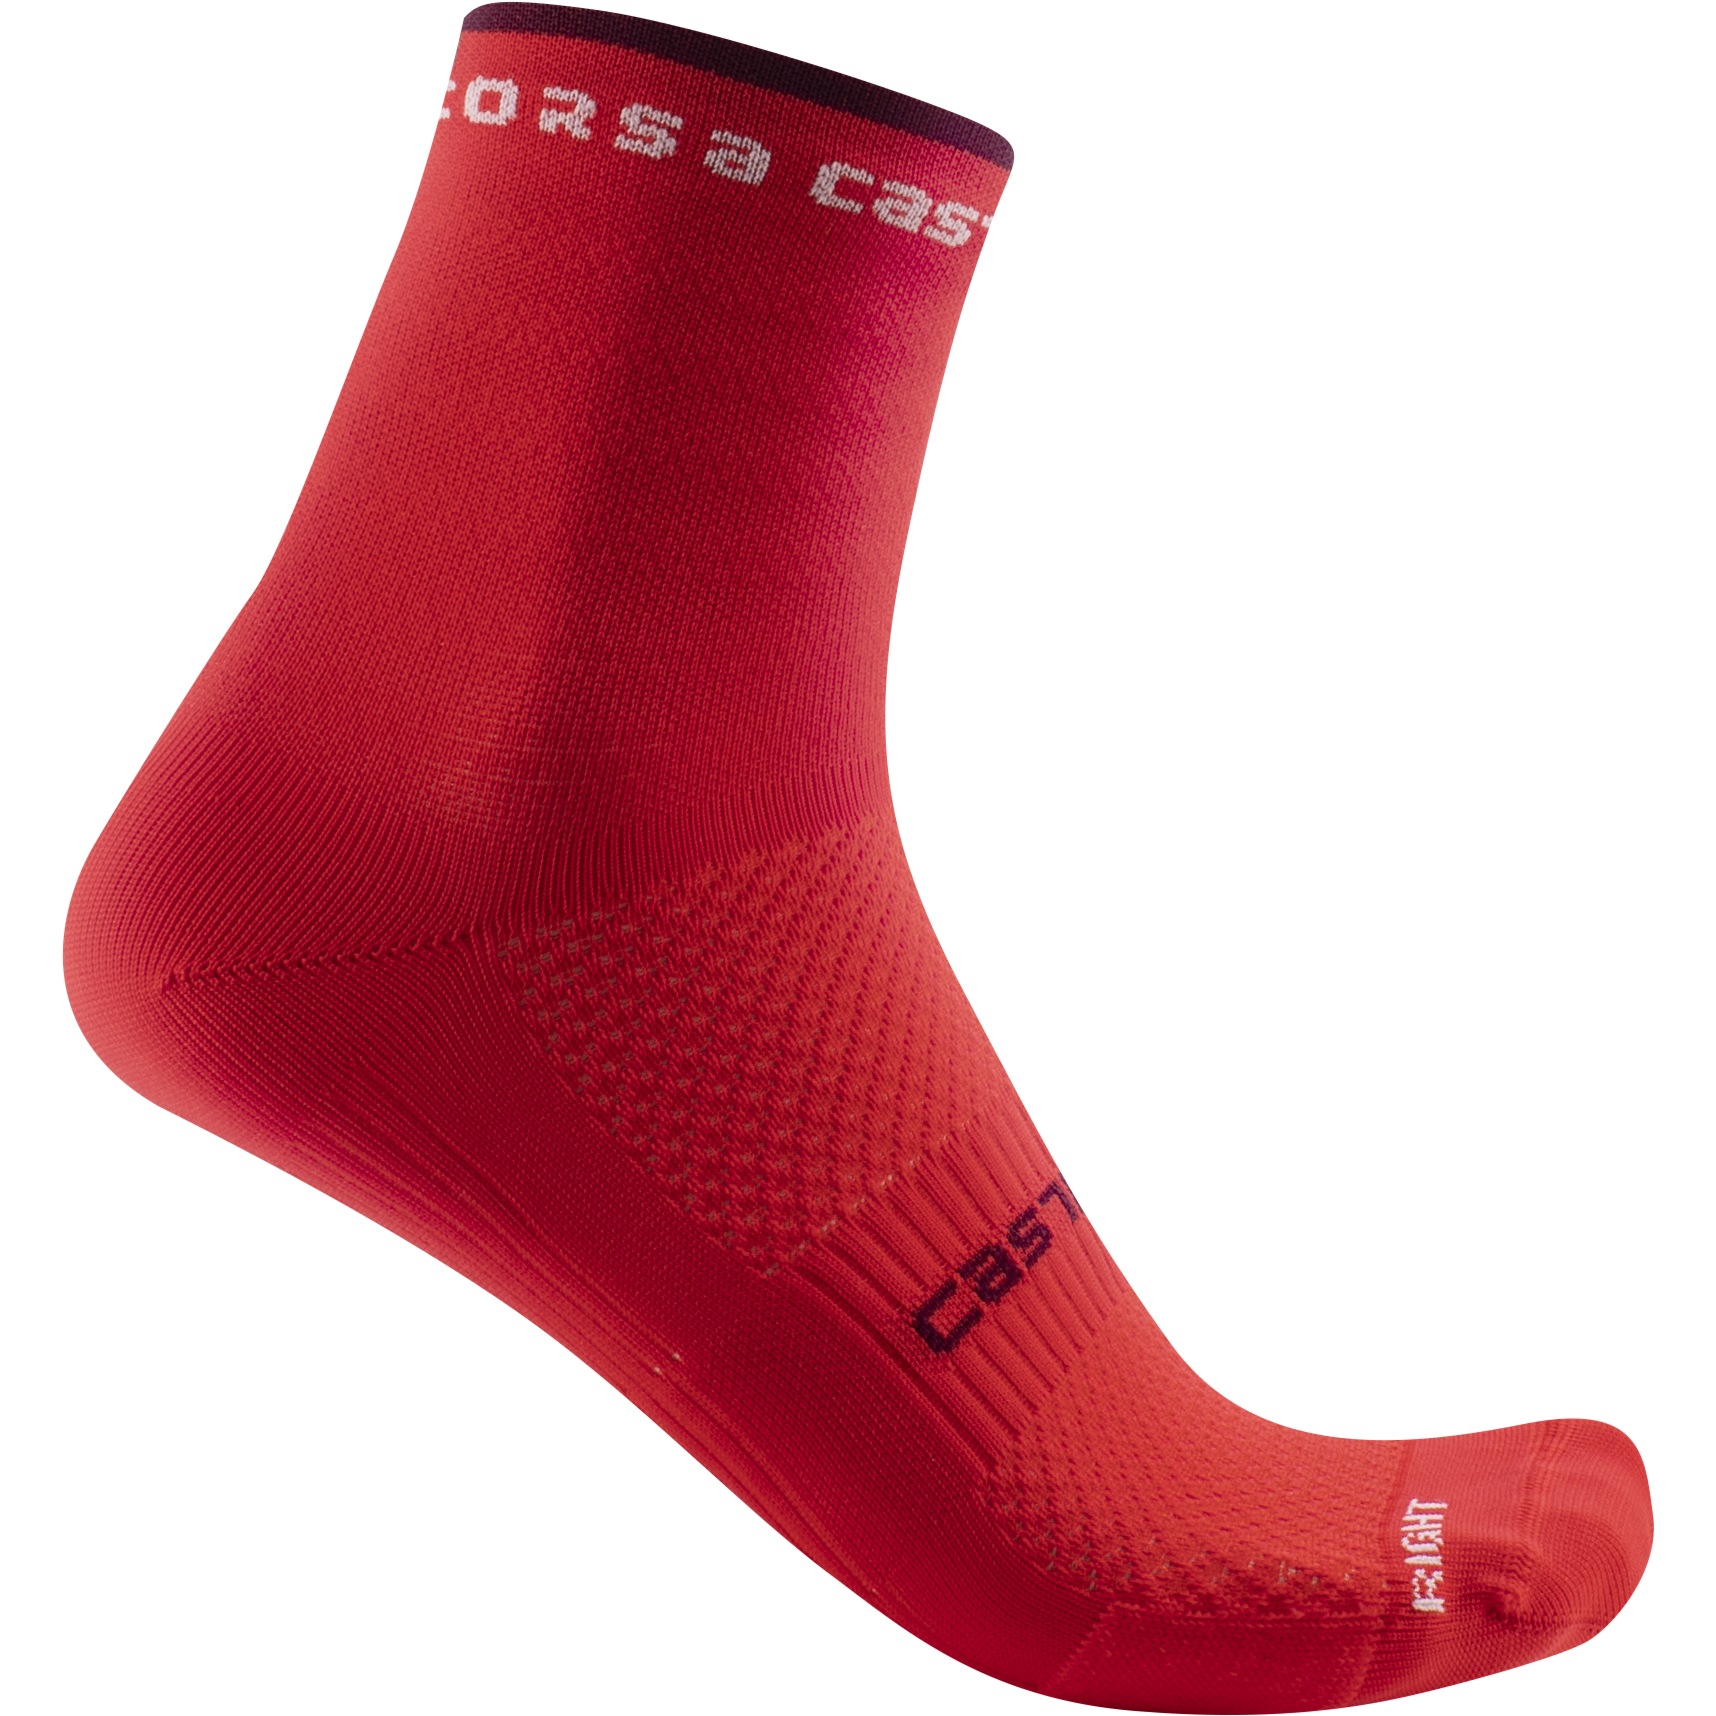 Produktbild von Castelli Rosso Corsa 11 Socken Damen - hibiscus 081